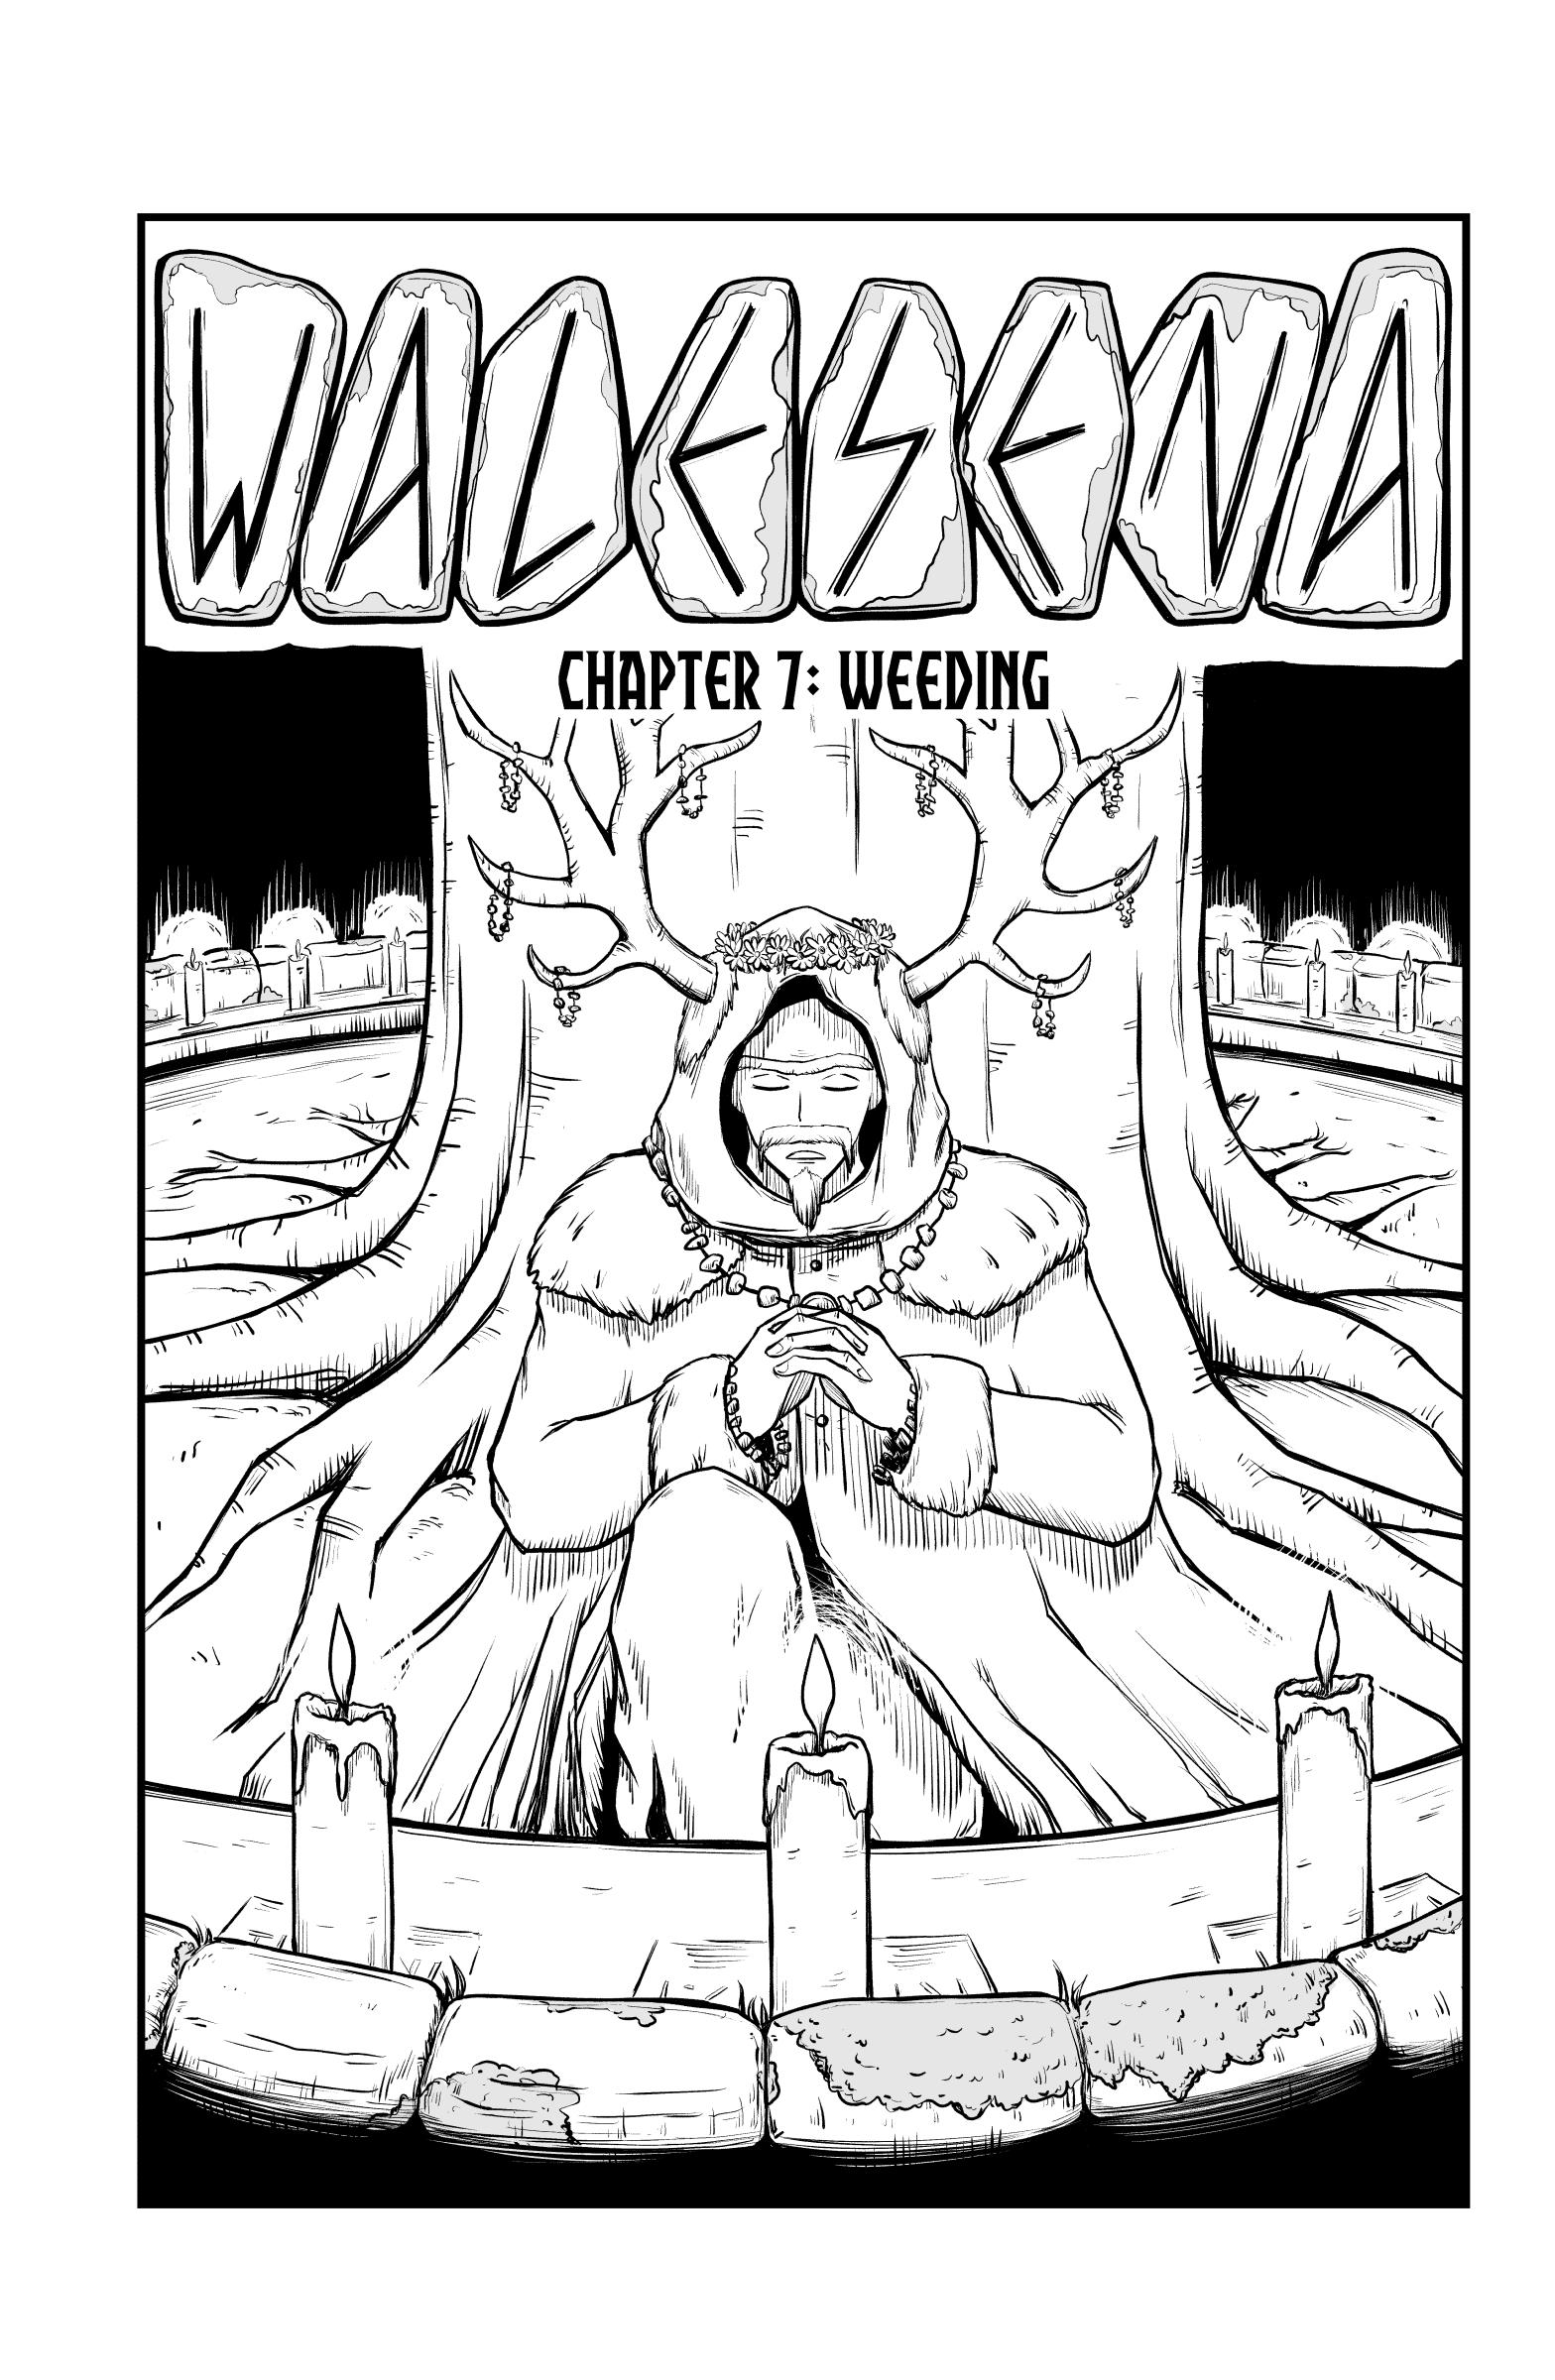 Walesena Chapter 7 #1